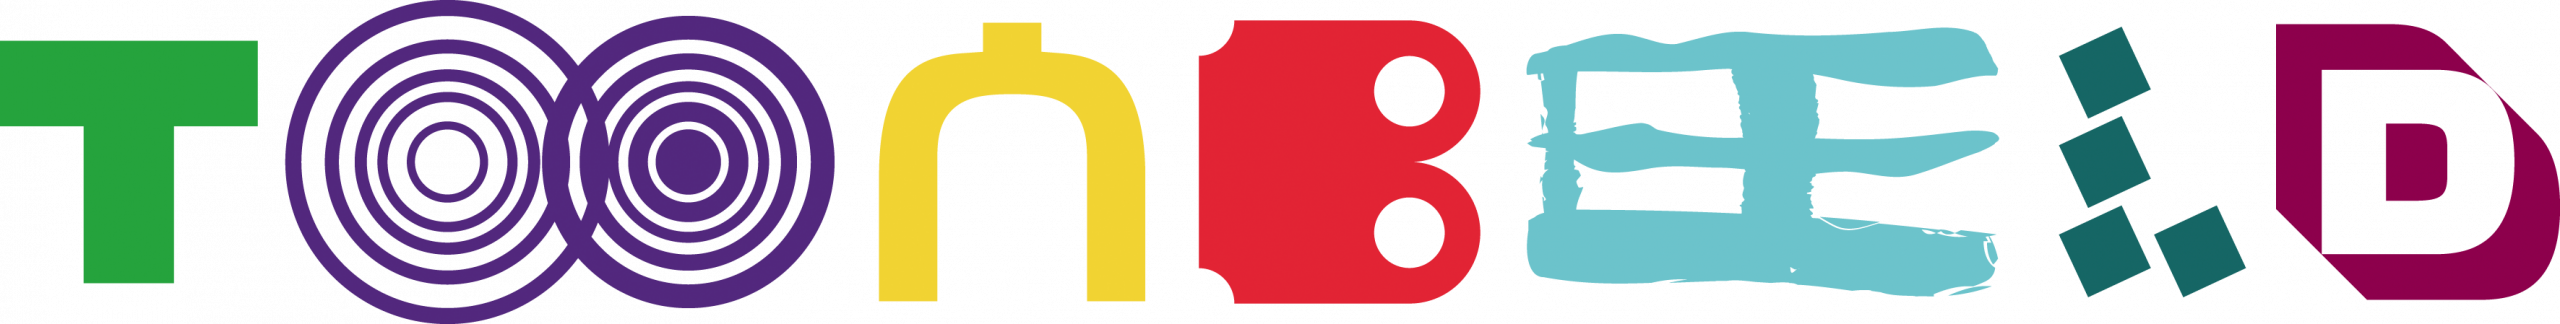 tb-logo-liggend